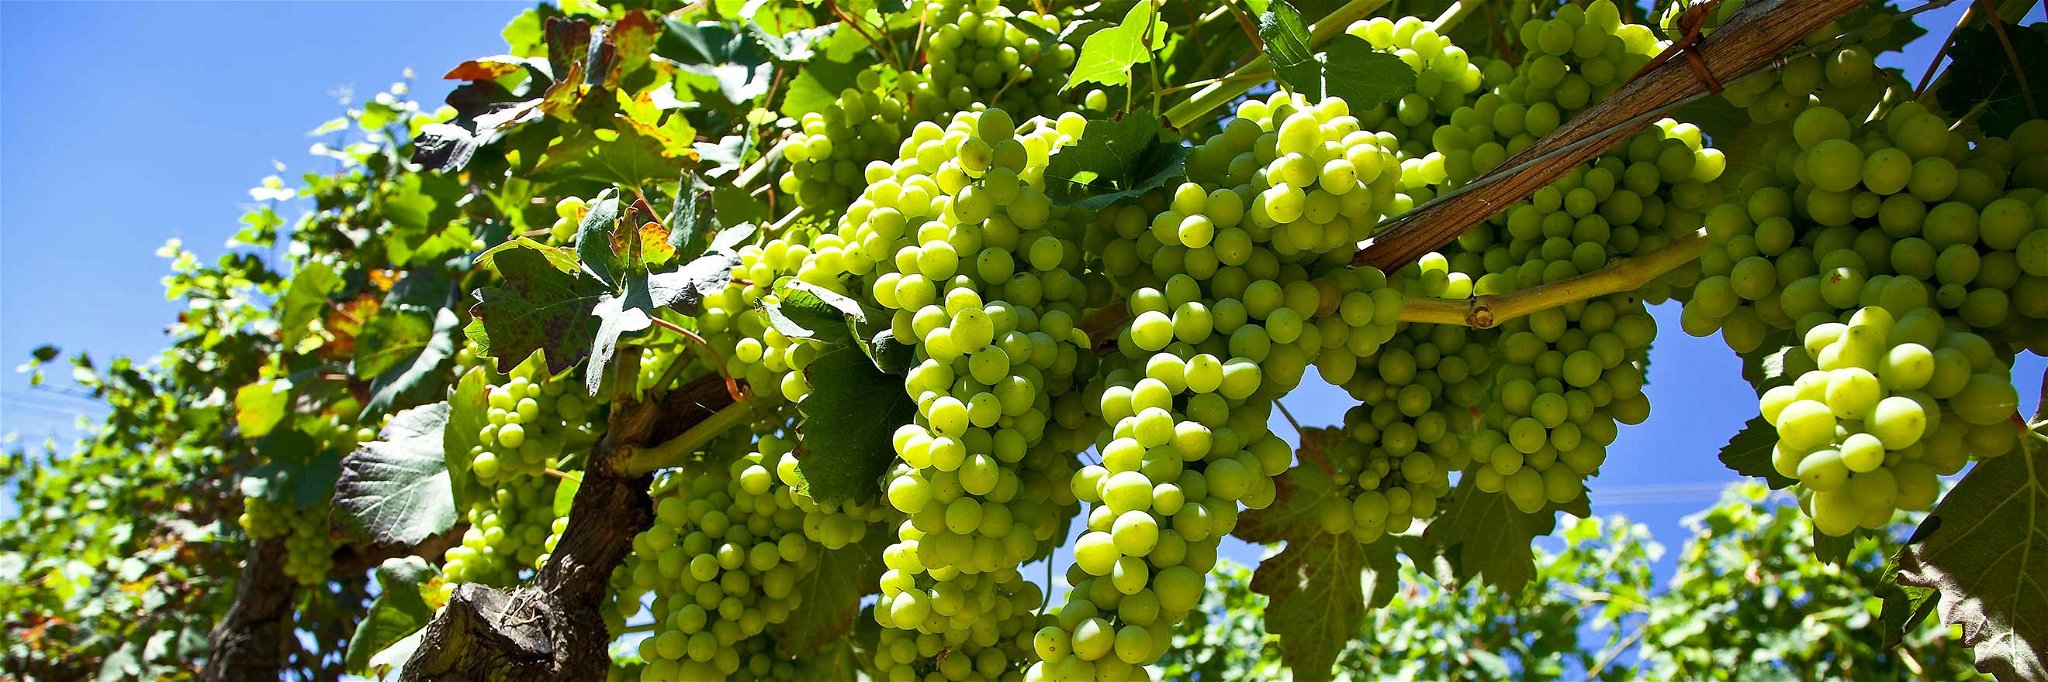 Moscato-Trauben in den Weingärten von Piemont, Italien.&nbsp;&nbsp;